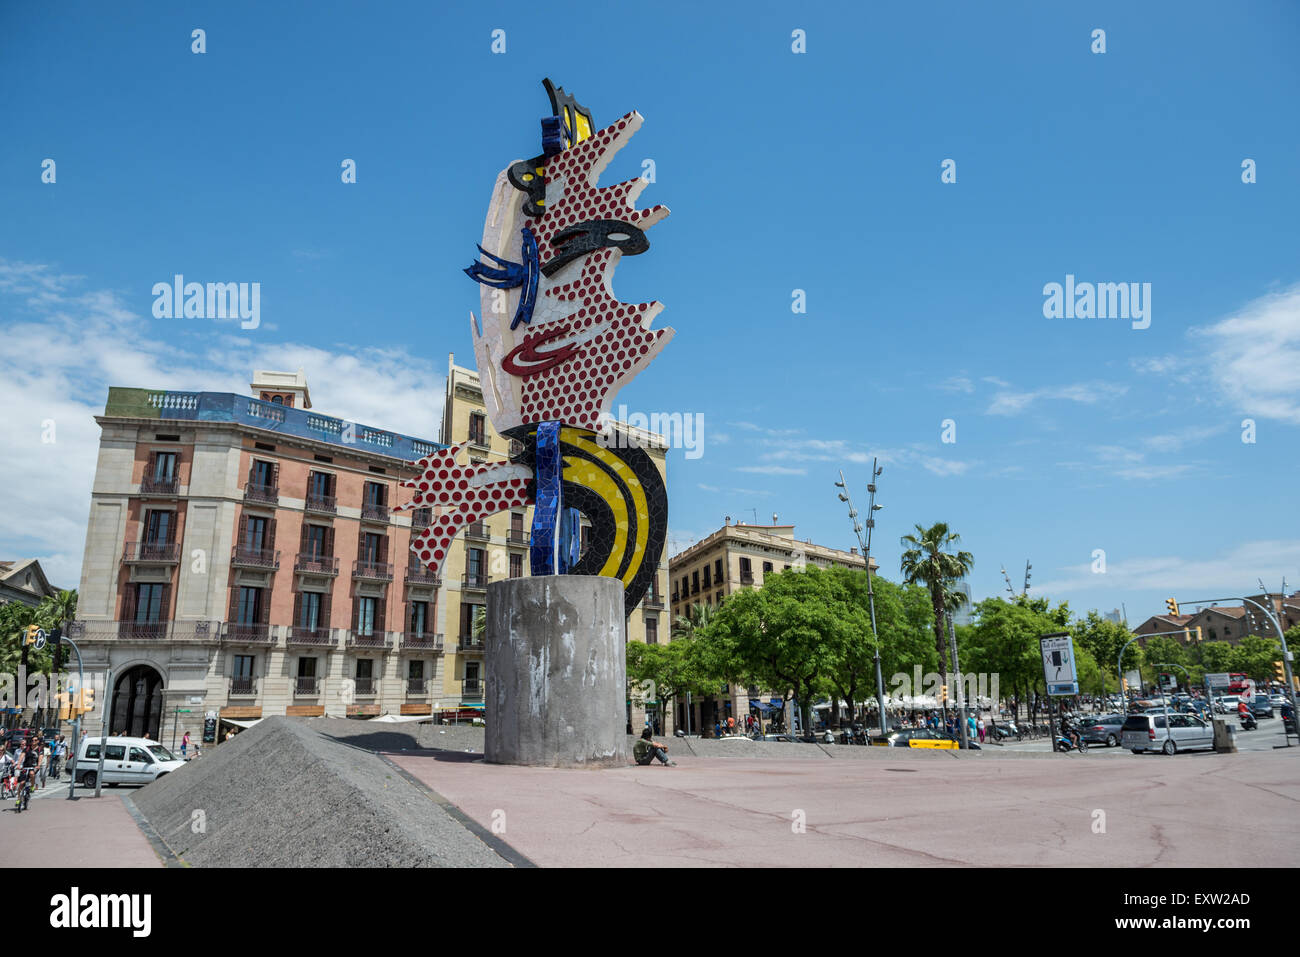 El Cap de Barcelone (la tête) surréalisme sculpture de l'artiste américain Roy Lichtenstein à Barcelone, Espagne Banque D'Images